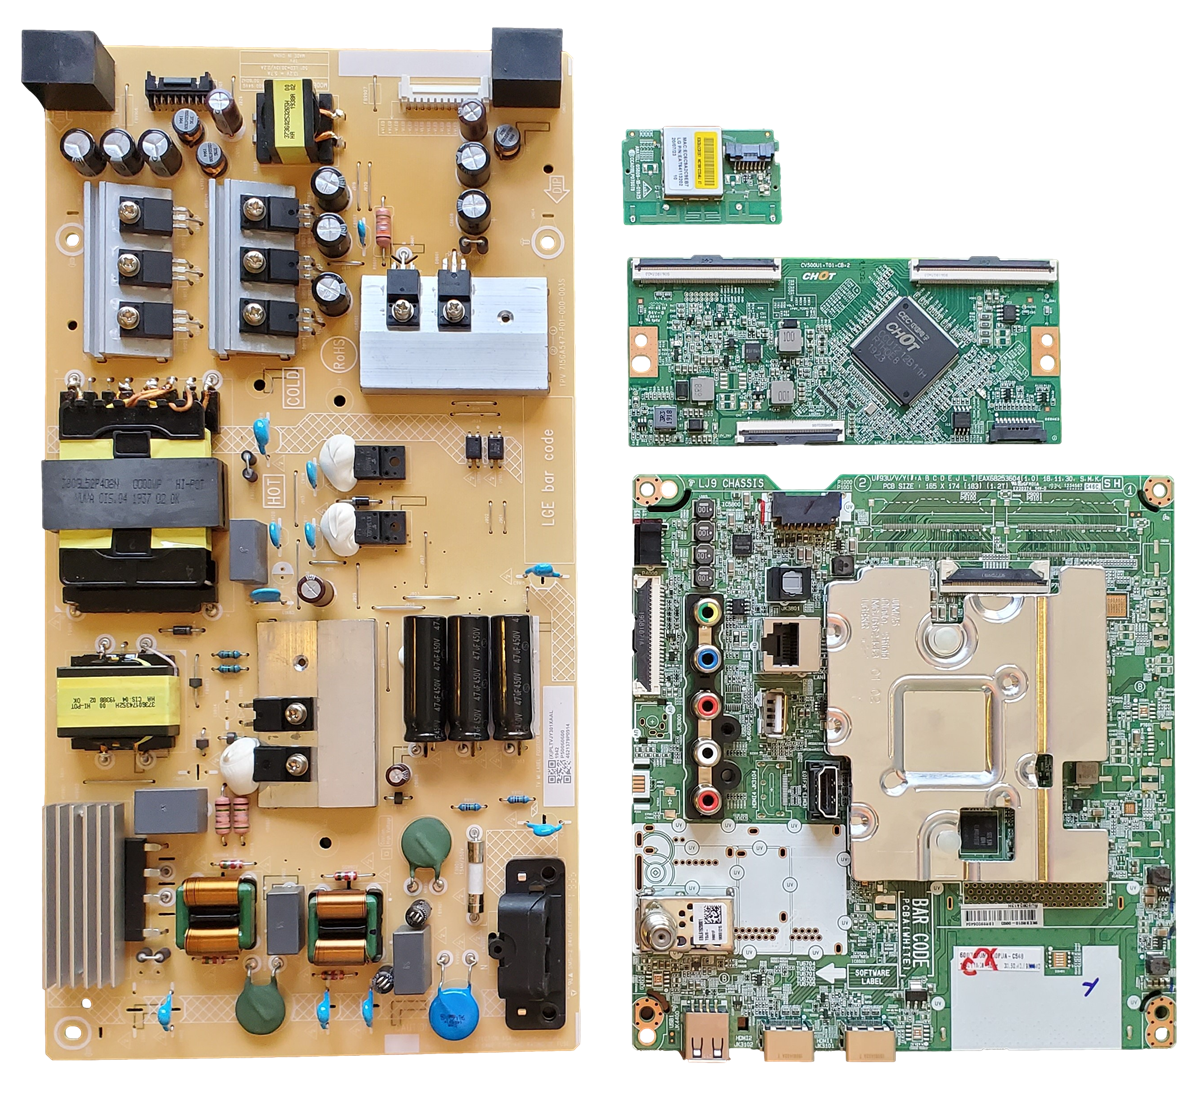 50UM6900PUA LG TV Repair Parts Kit, EBR89006404 Main Board, PLTVJY301XAAL Power Supply, CV500U1-T01-CB-2 T-Con, EAT64113202 Wifi, 50UM6900PUA